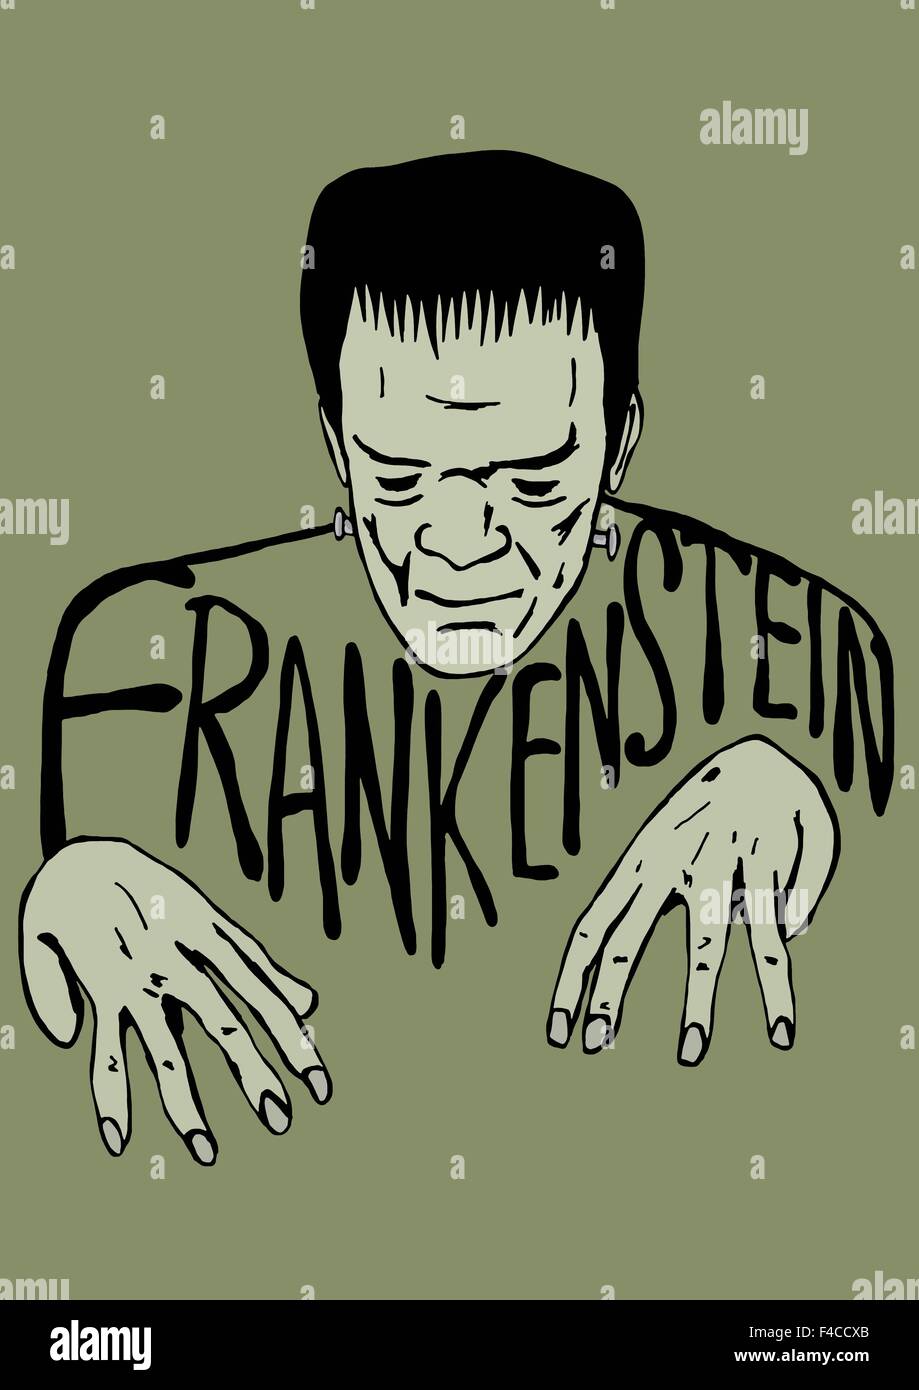 Frankenstein sketch Stock Photo